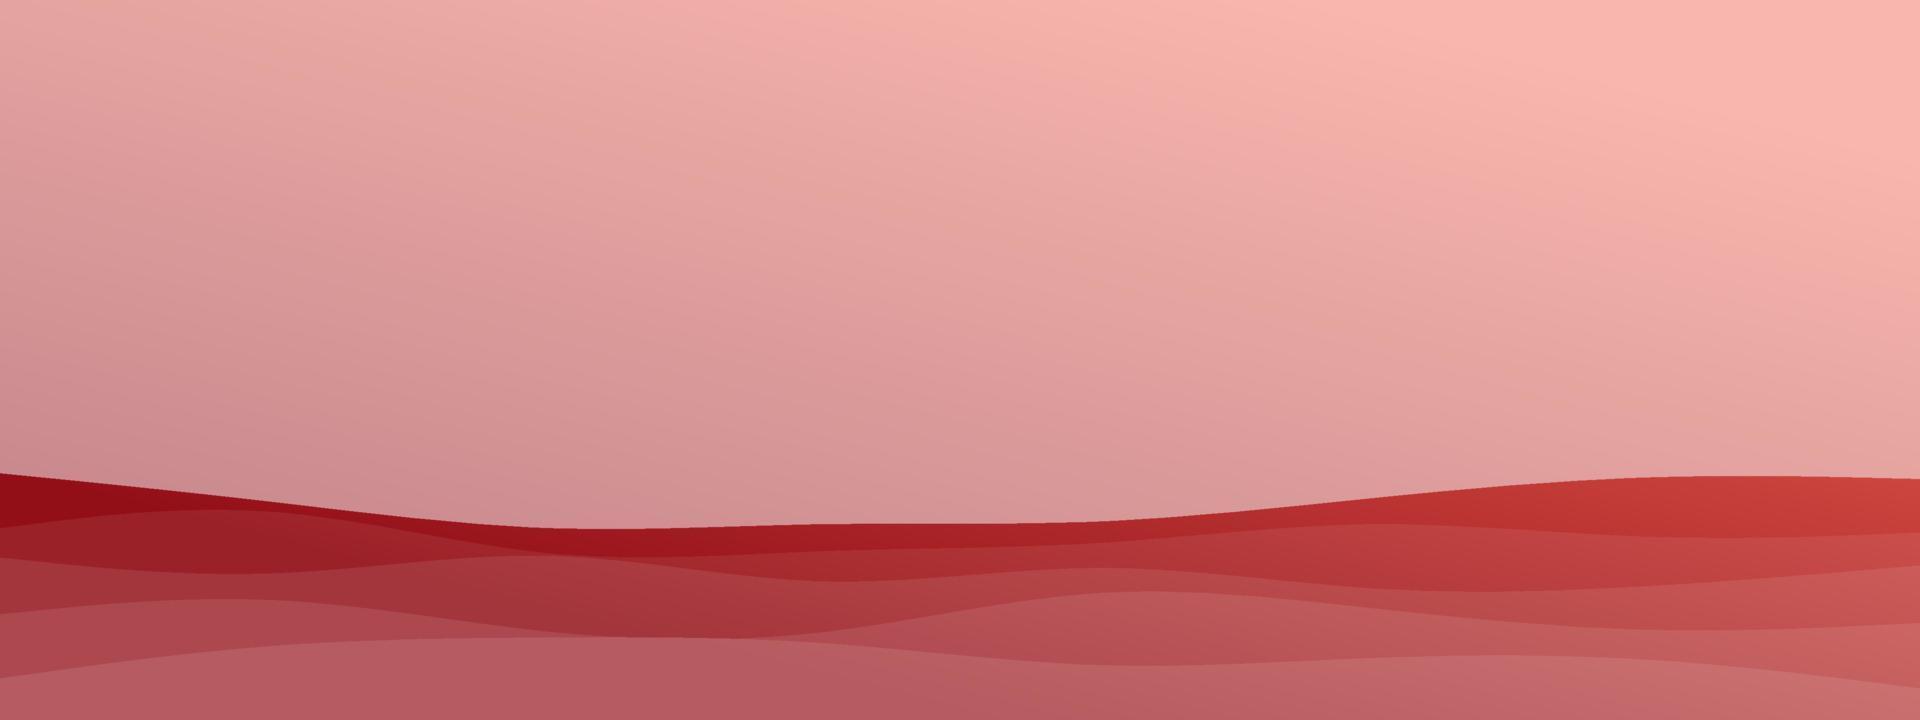 abstracte golf vloeiende lijn geometrische minimalistische moderne achtergrond met kleurovergang gecombineerd delicate kleur. trendy sjabloon voor de website van de bestemmingspagina van het brochurevisitekaartje. vector illustratie eps 10